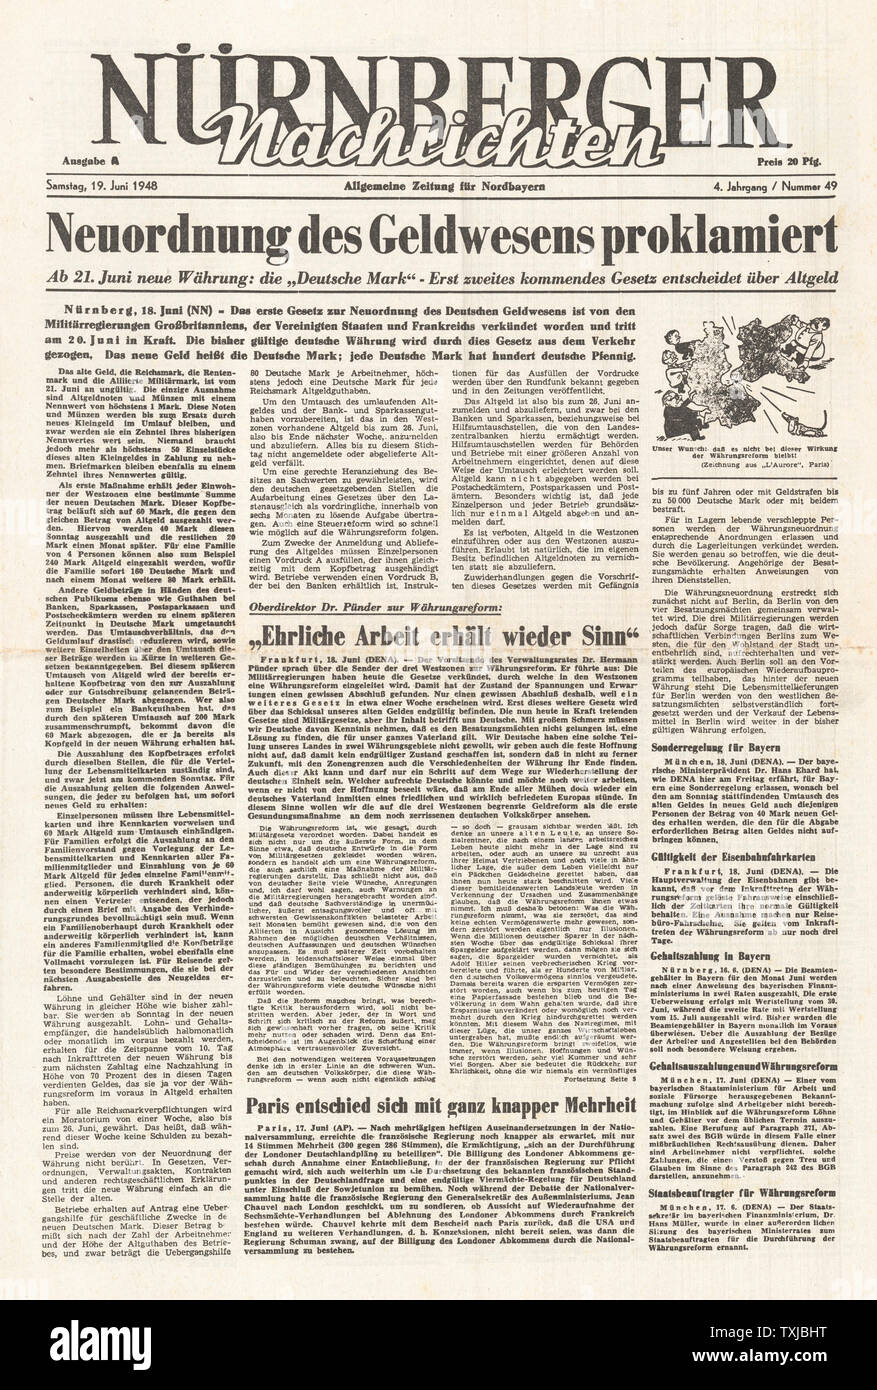 1948 Nurnberger Nachrichten newspaper front page Introduction of the Deutsche Mark Stock Photo